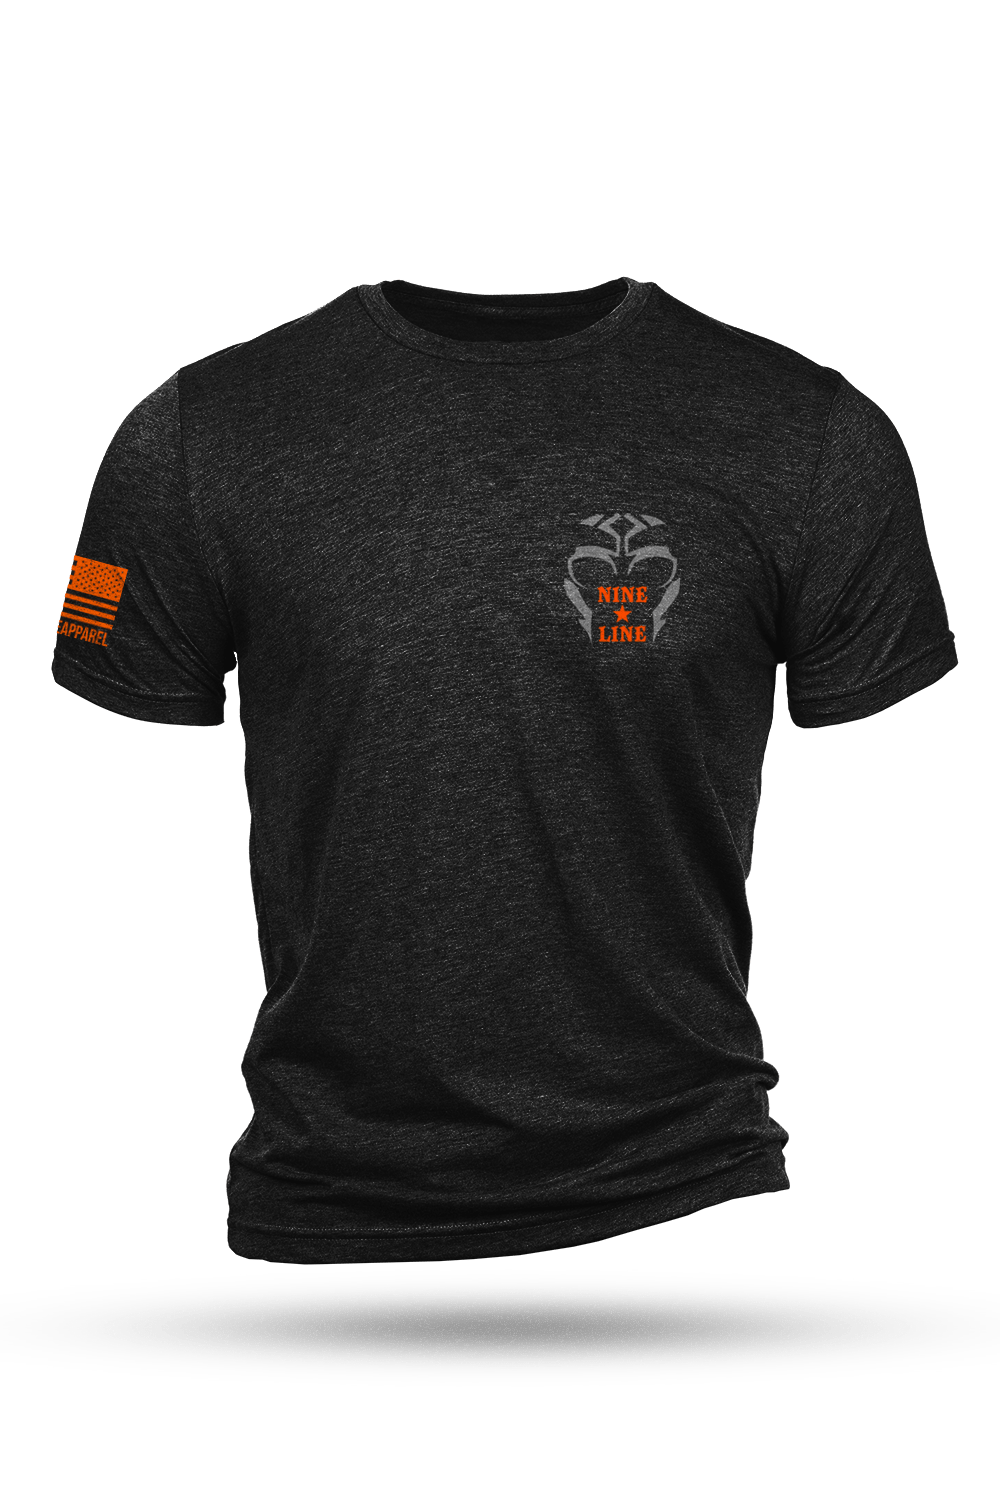 Men's Tri-Blend T-Shirt - Once a Rebel - Nine Line Apparel